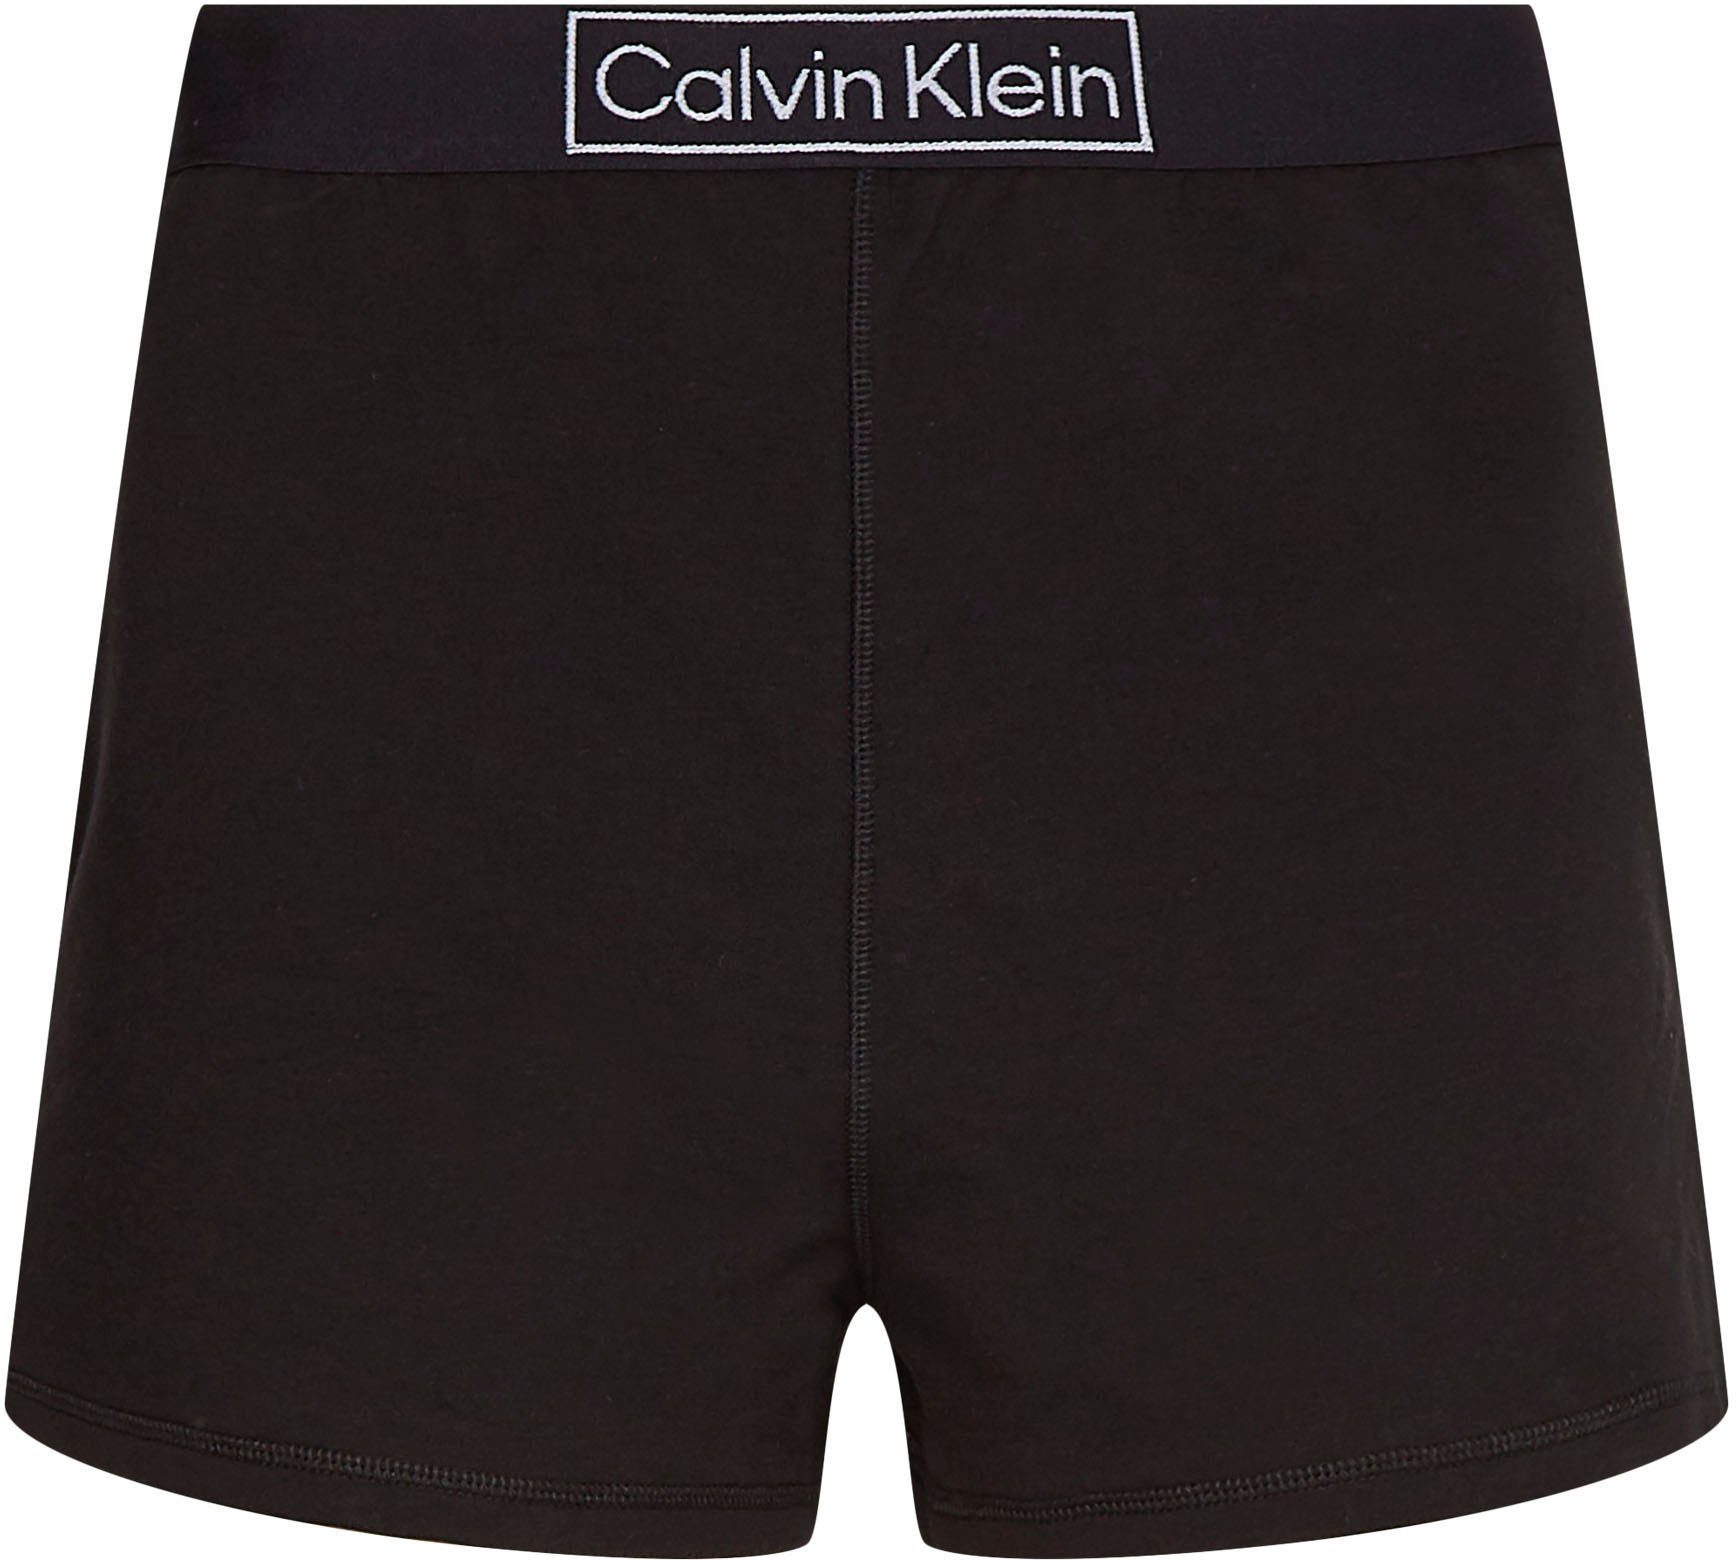 Calvin Klein Schlafshorts Underwear Gummizug mit bequemen